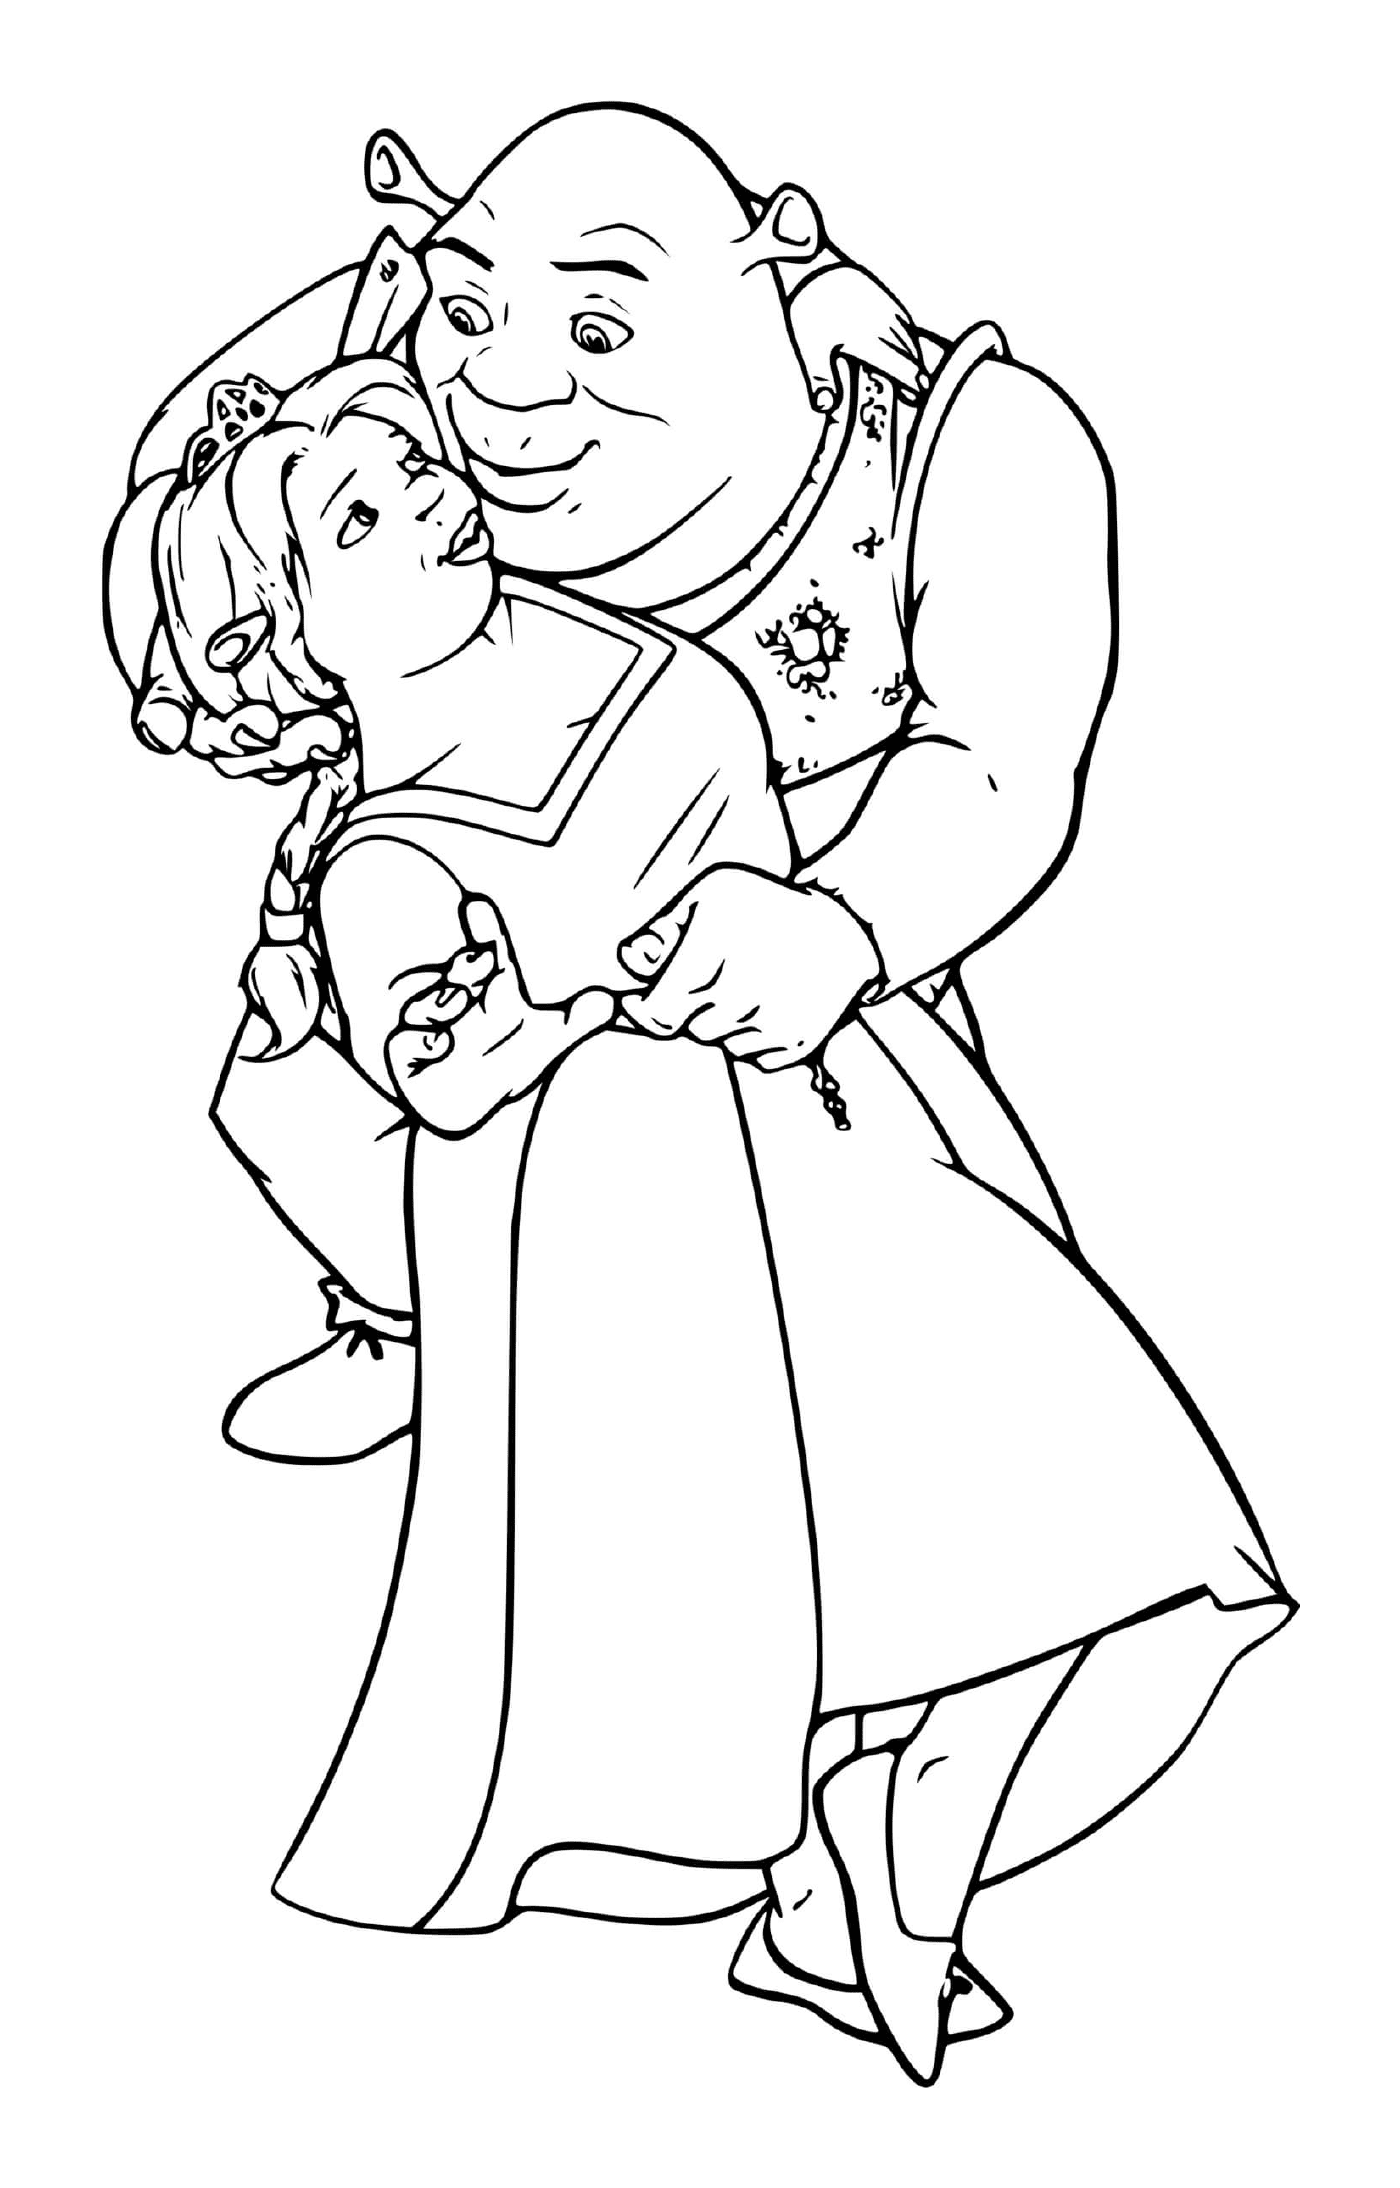   Un vieil homme tenant une petite fille dans ses bras 